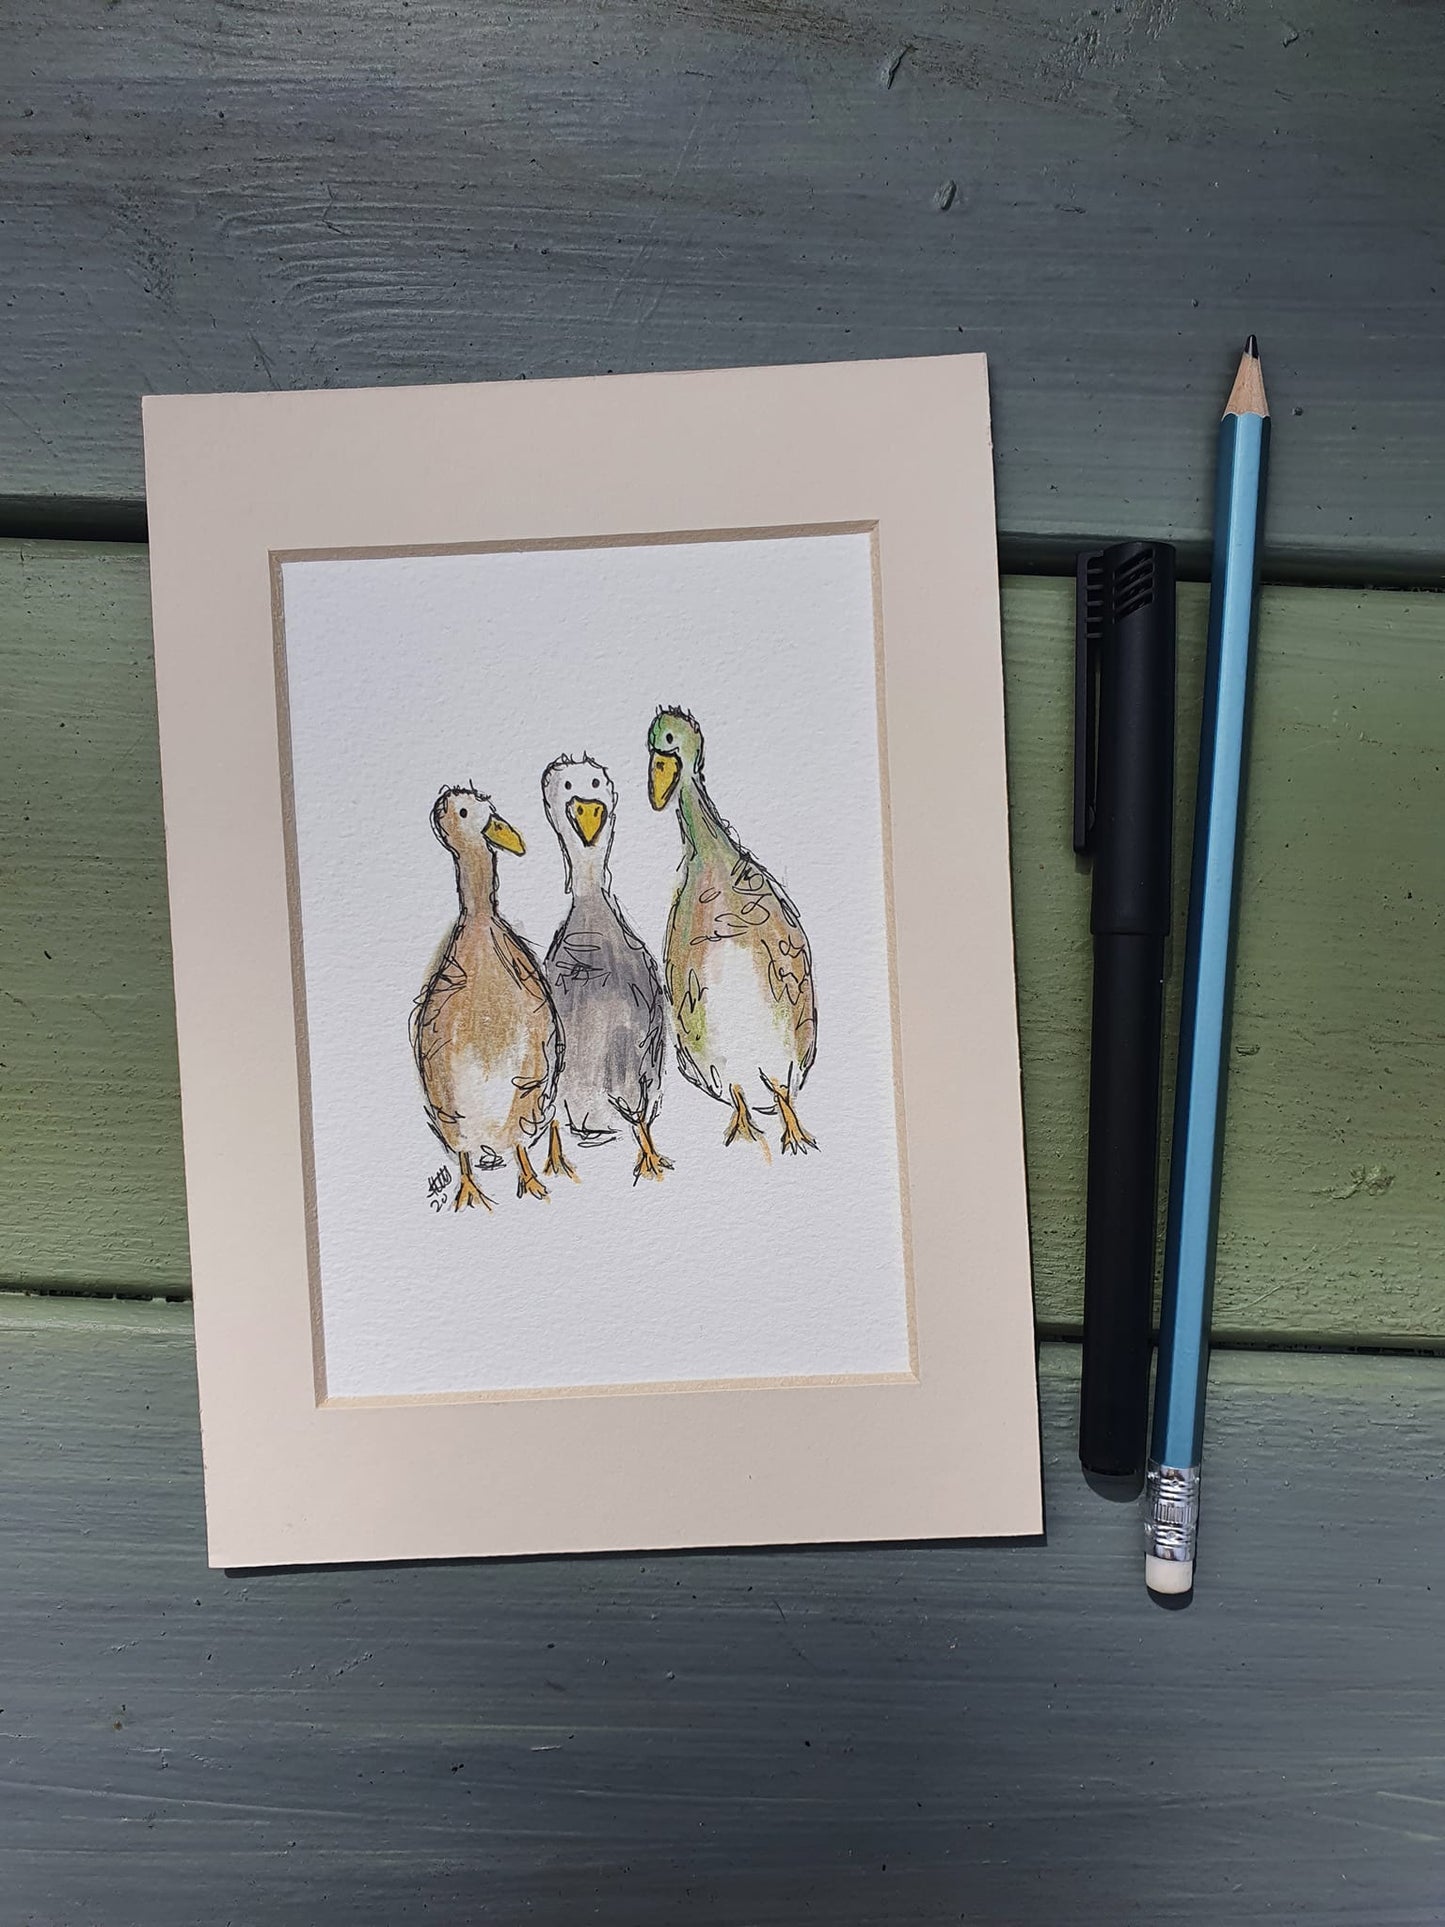 3 little ducks illustration